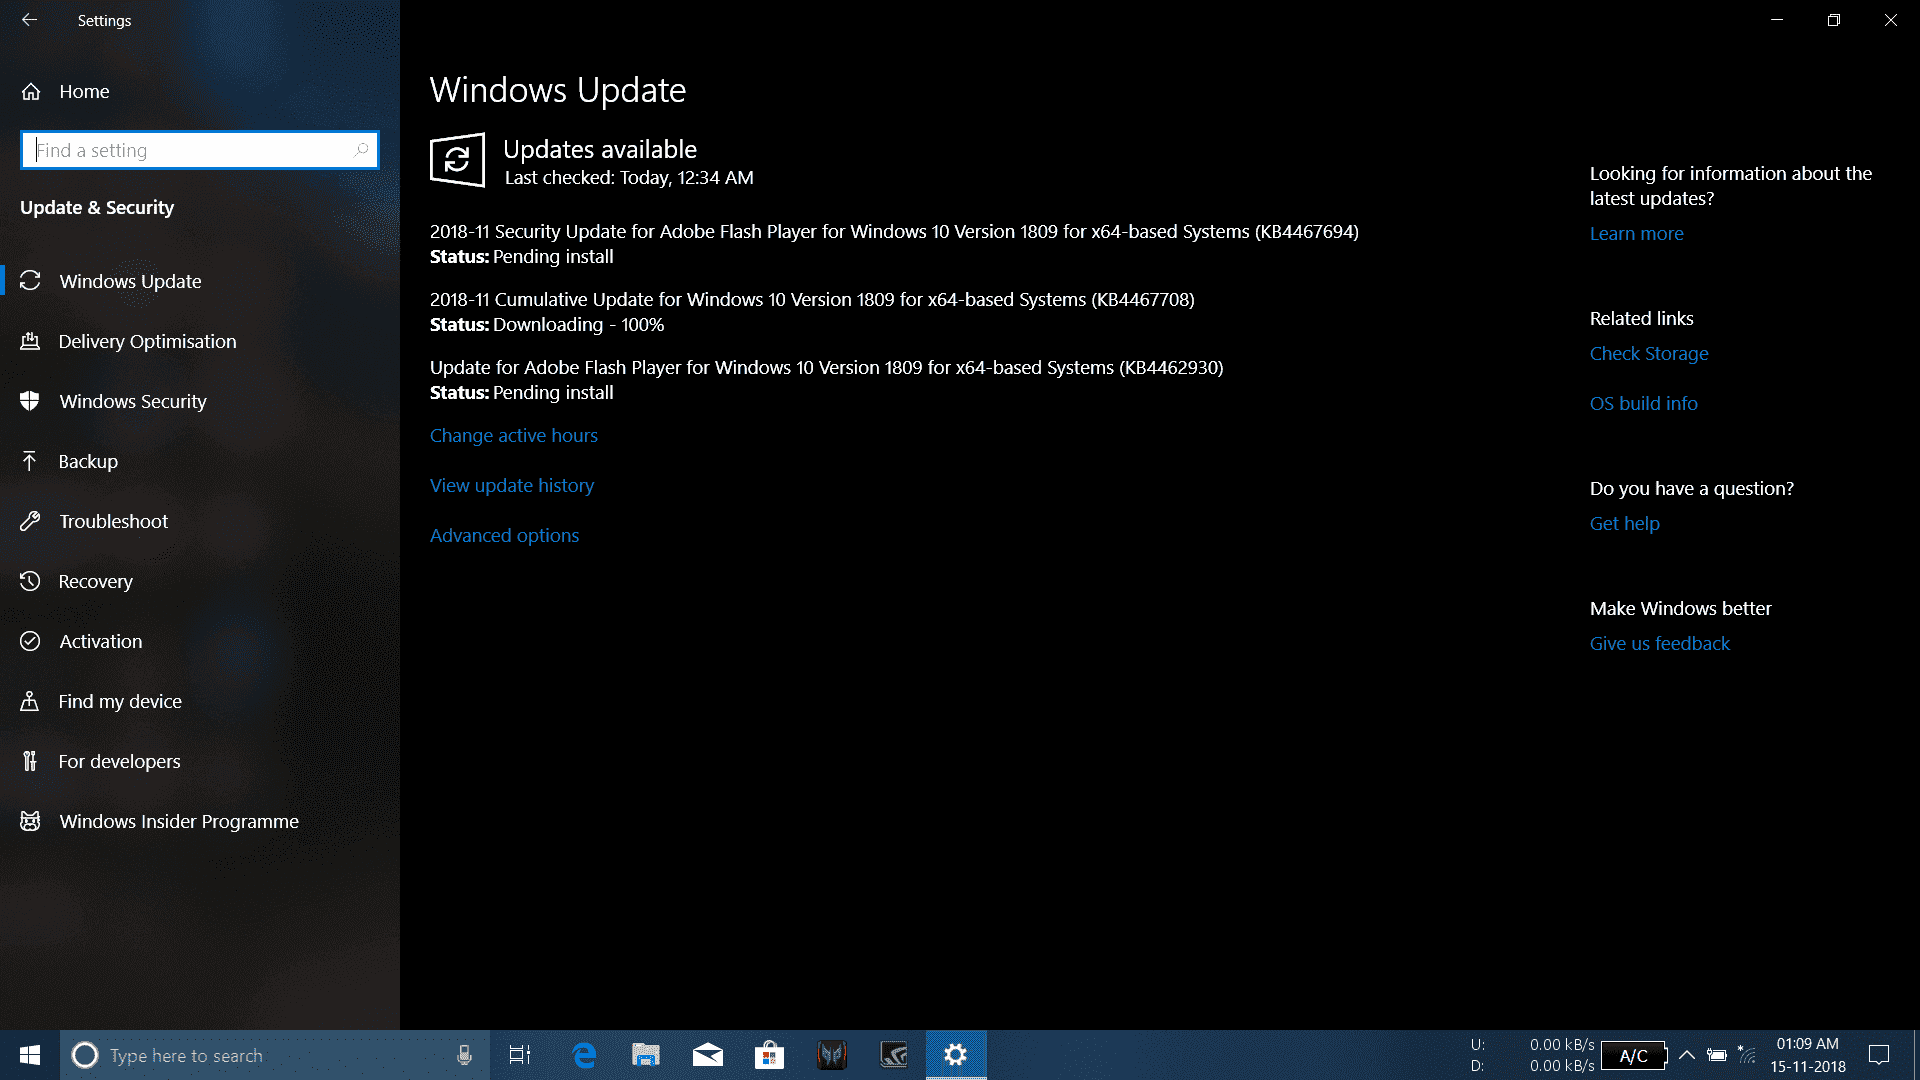 Windows Updates stuck in re-released Windows 10 October Update (17763.107)! 1e6251e8-6314-45d6-9579-7a9e80fc5fba?upload=true.png